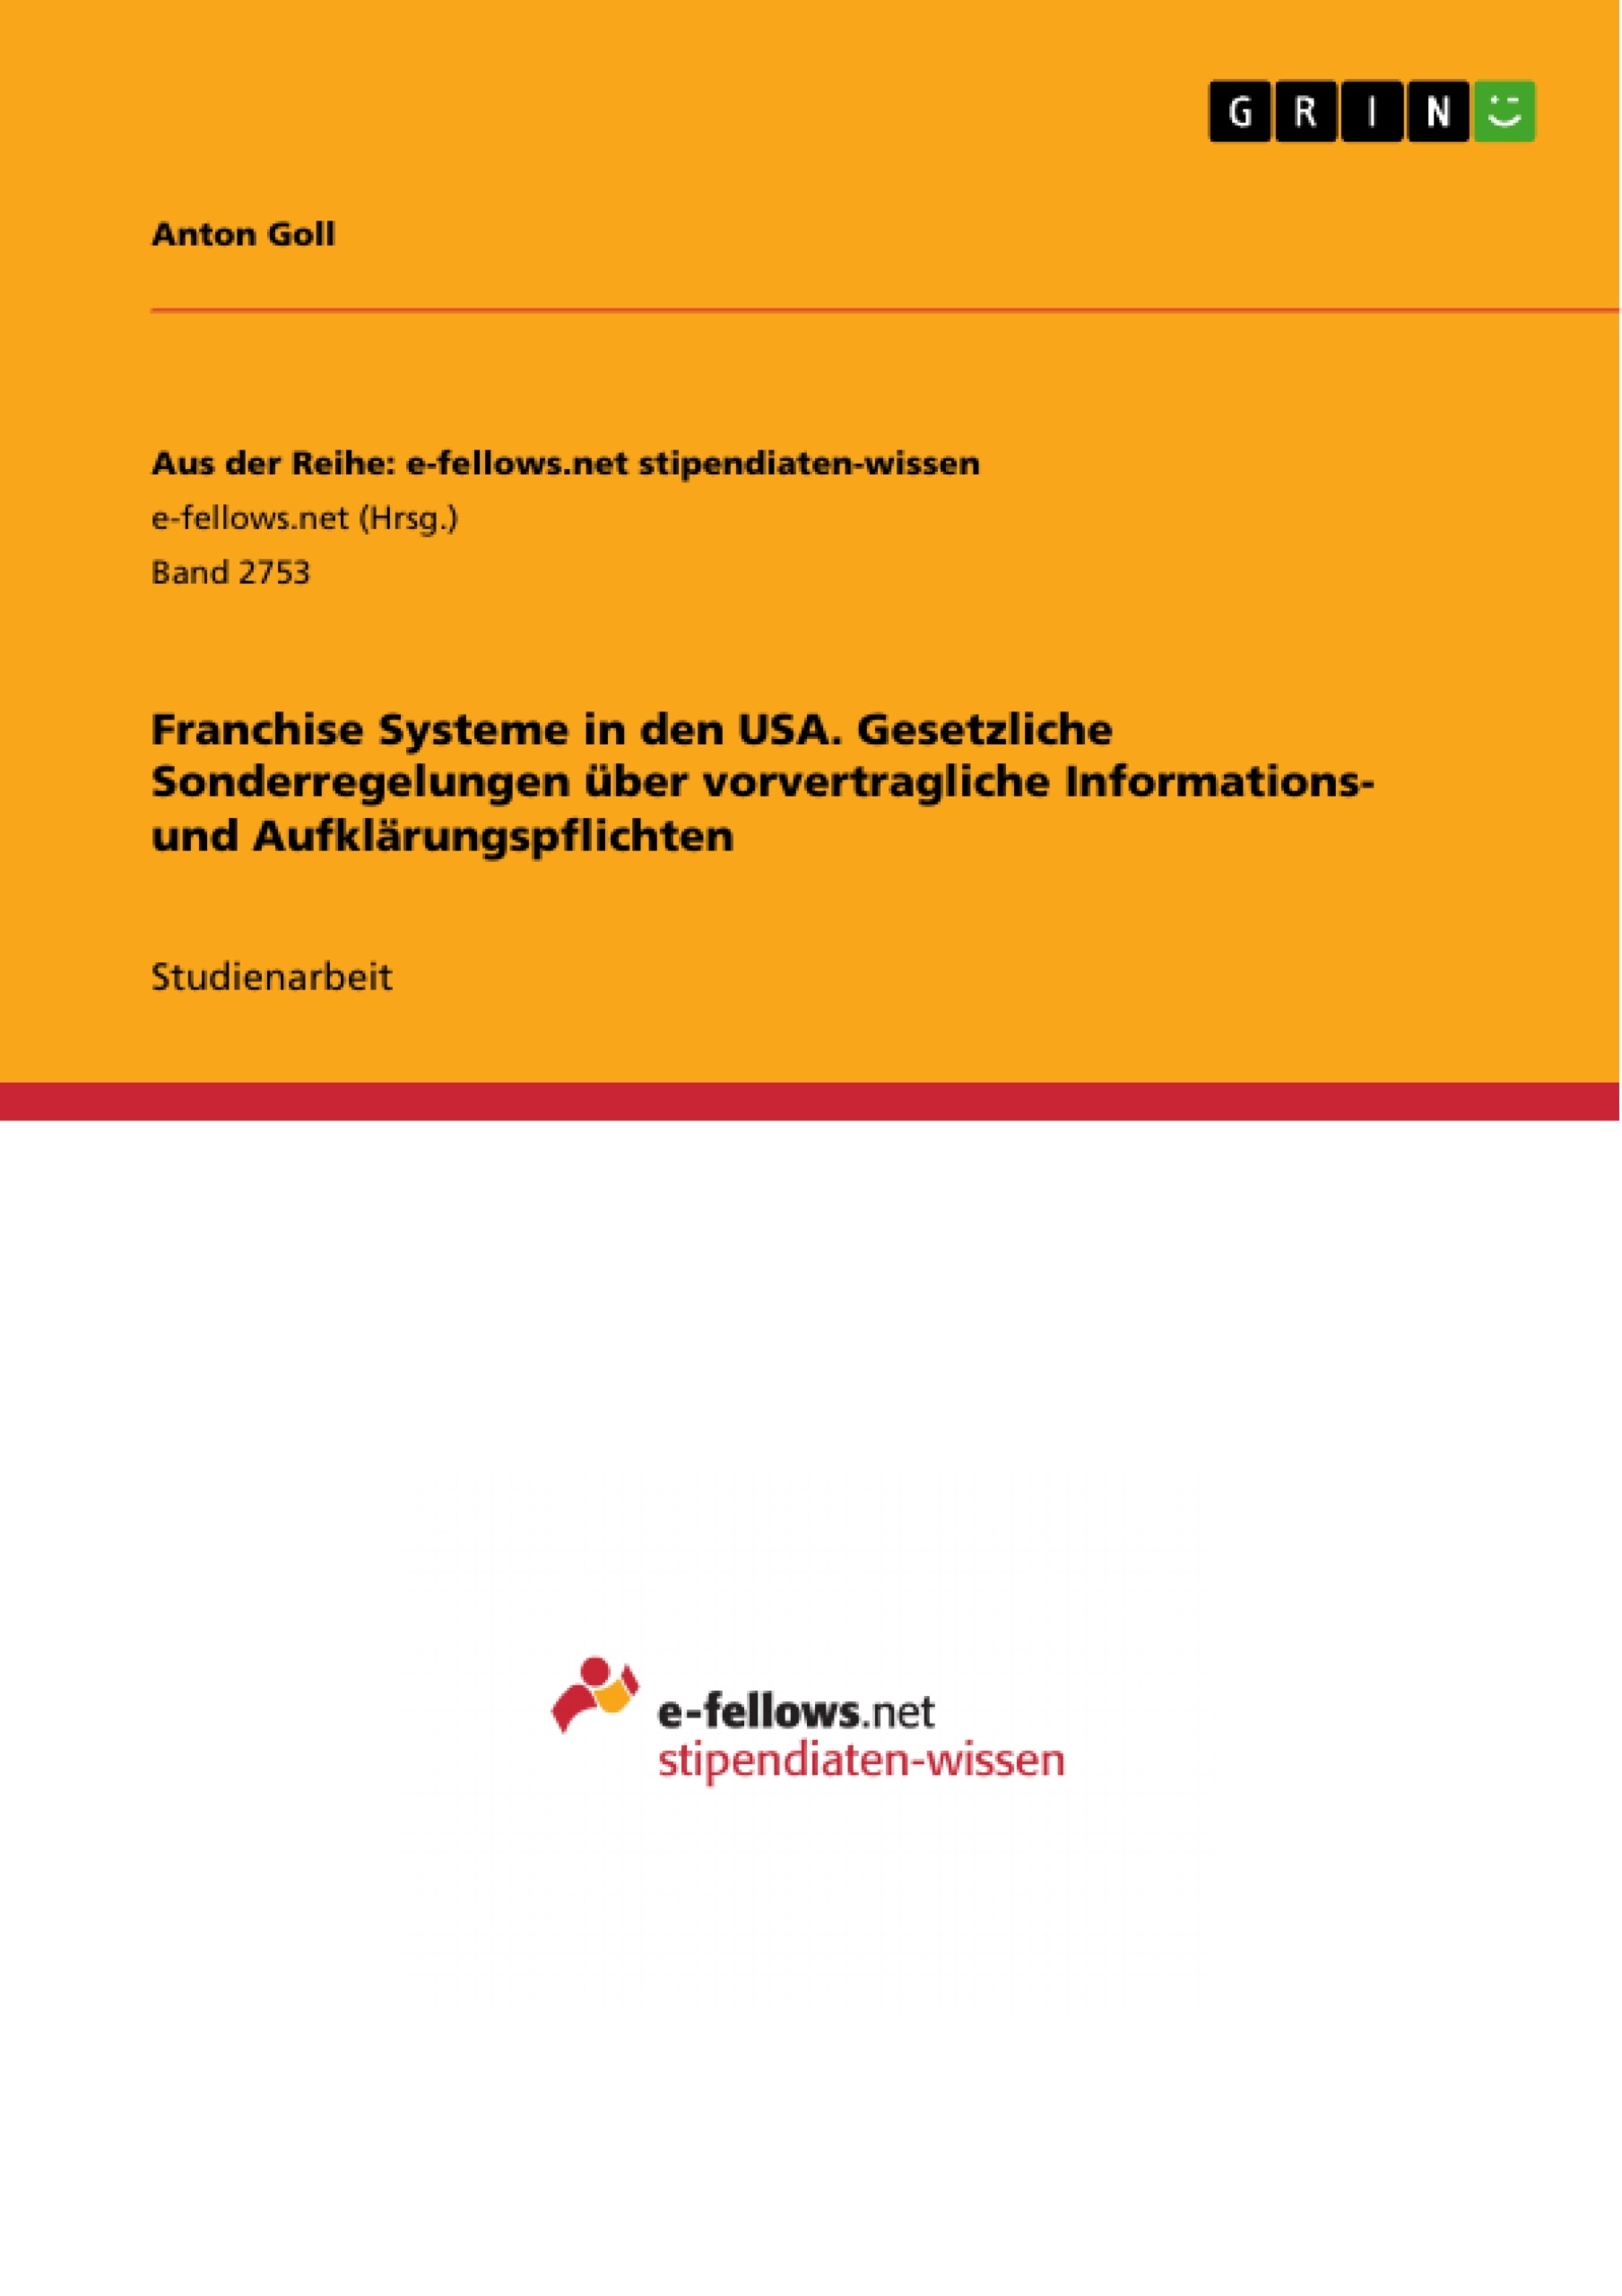 Titel: Franchise Systeme in den USA. Gesetzliche Sonderregelungen über vorvertragliche Informations- und Aufklärungspflichten